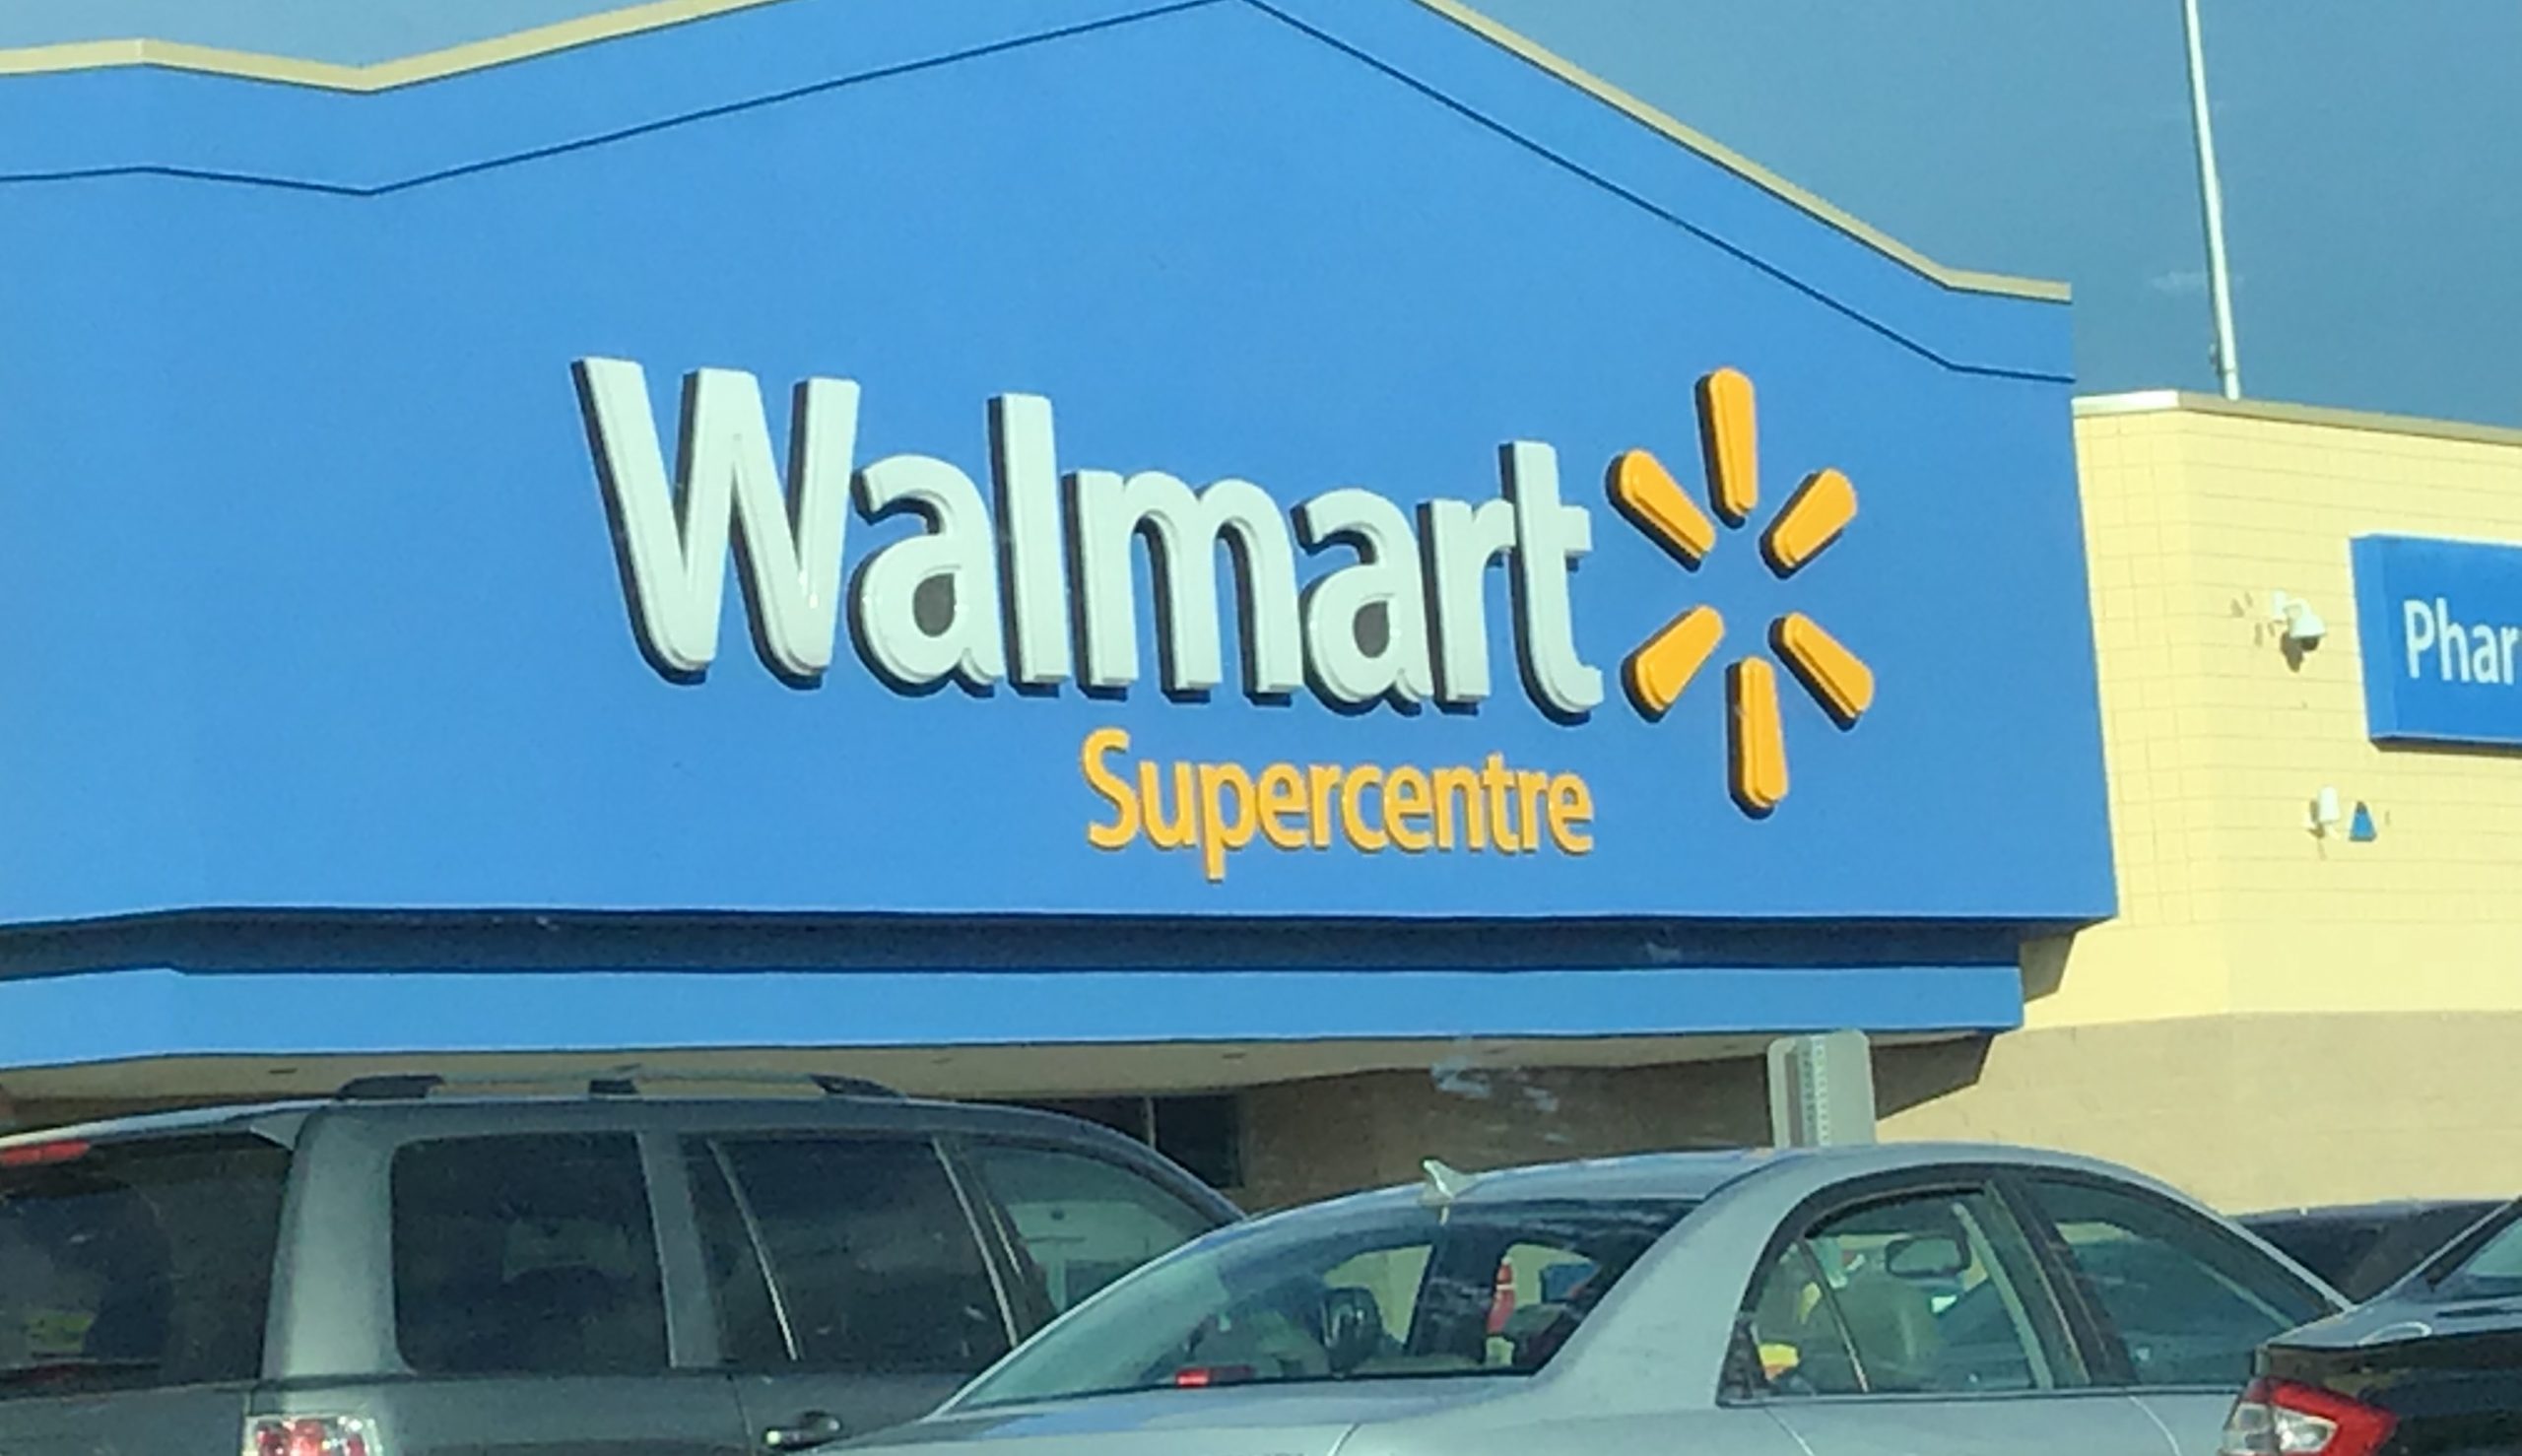 Σαν σήμερα ιδρύεται η Walmart η μεγαλύτερη εταιρεία λιανικής στον κόσμο